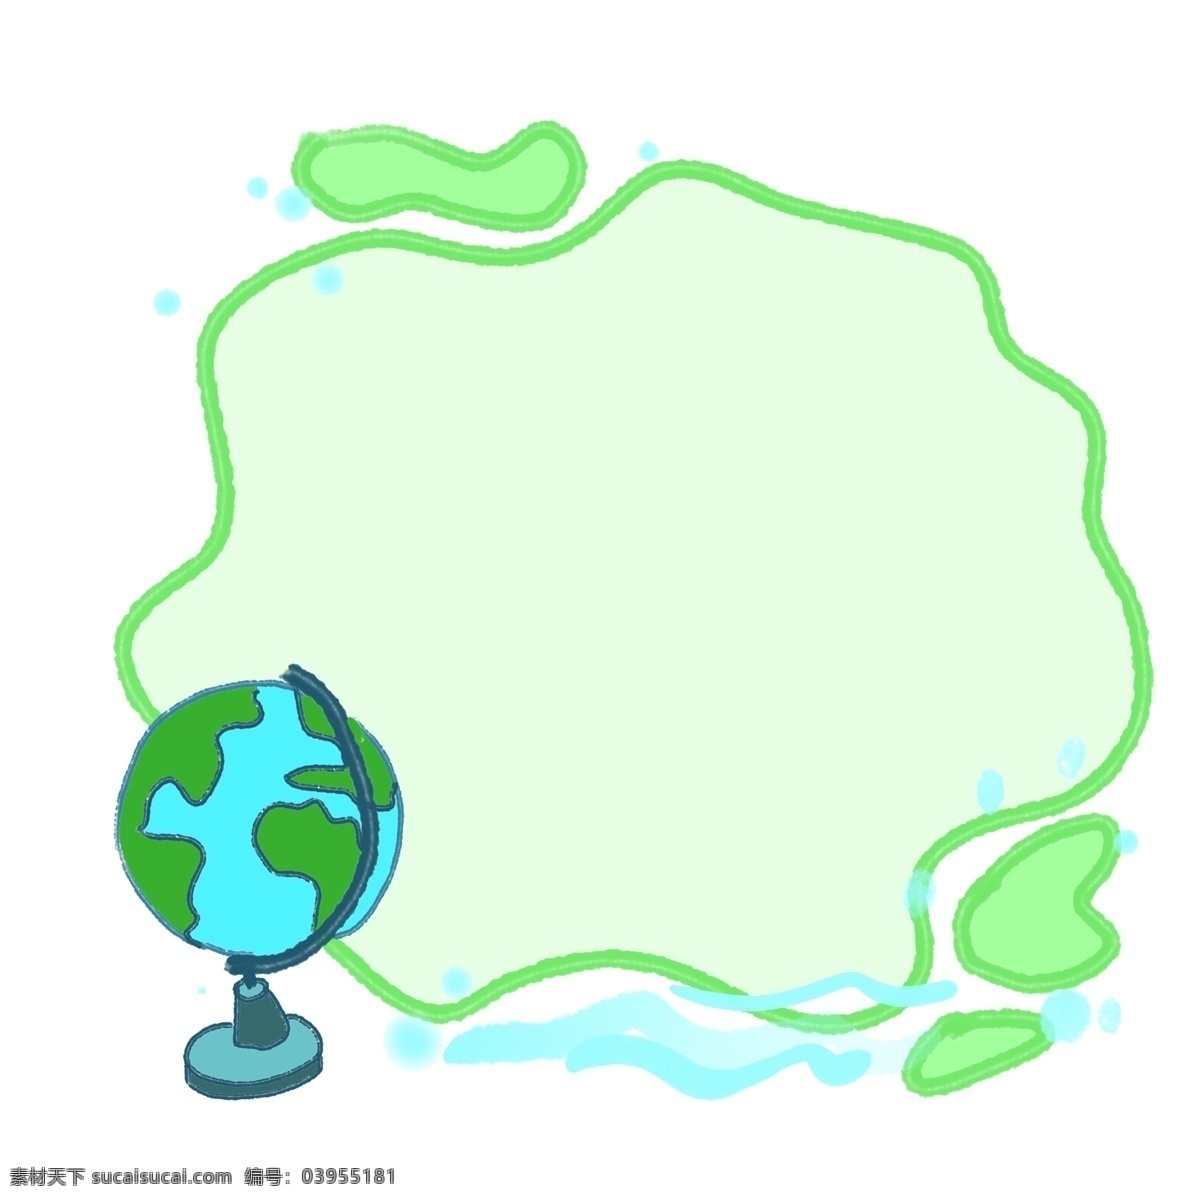 学习 地球仪 装饰 边框 学习边框 绿色边框 地球仪边框 卡通边框 可爱的边框 边框装饰 地理 地球仪插画